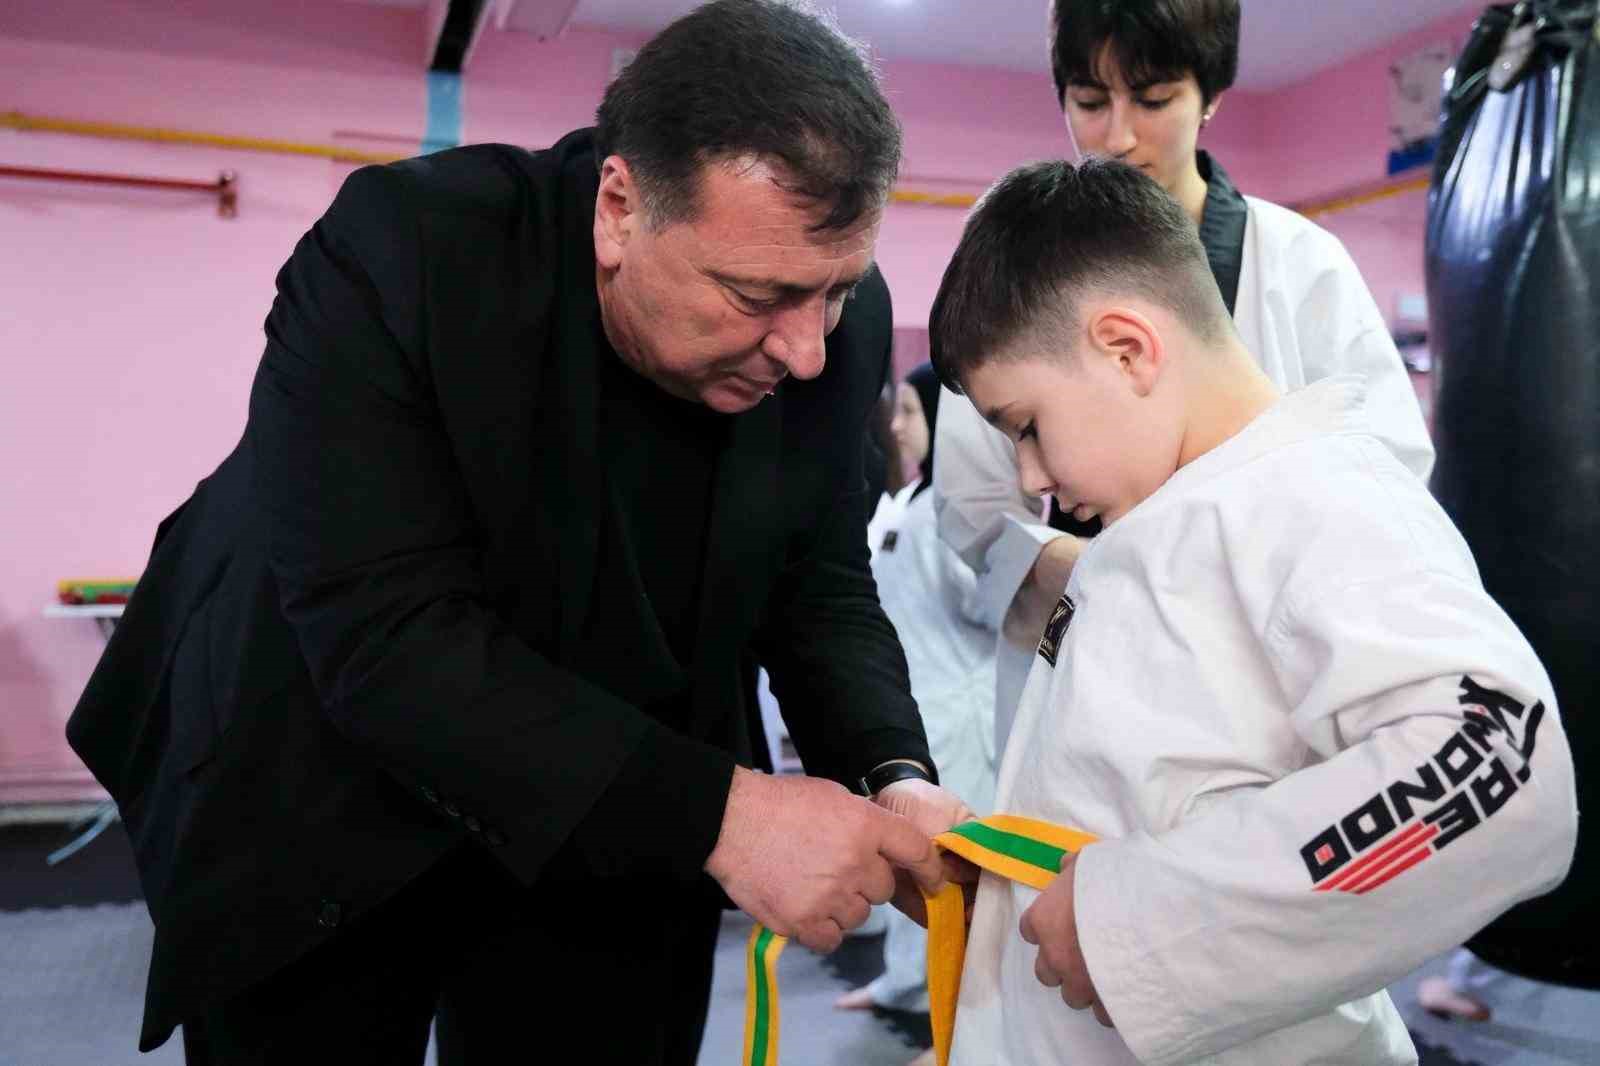 Özkan Alp minik taekwondocular ile buluştu